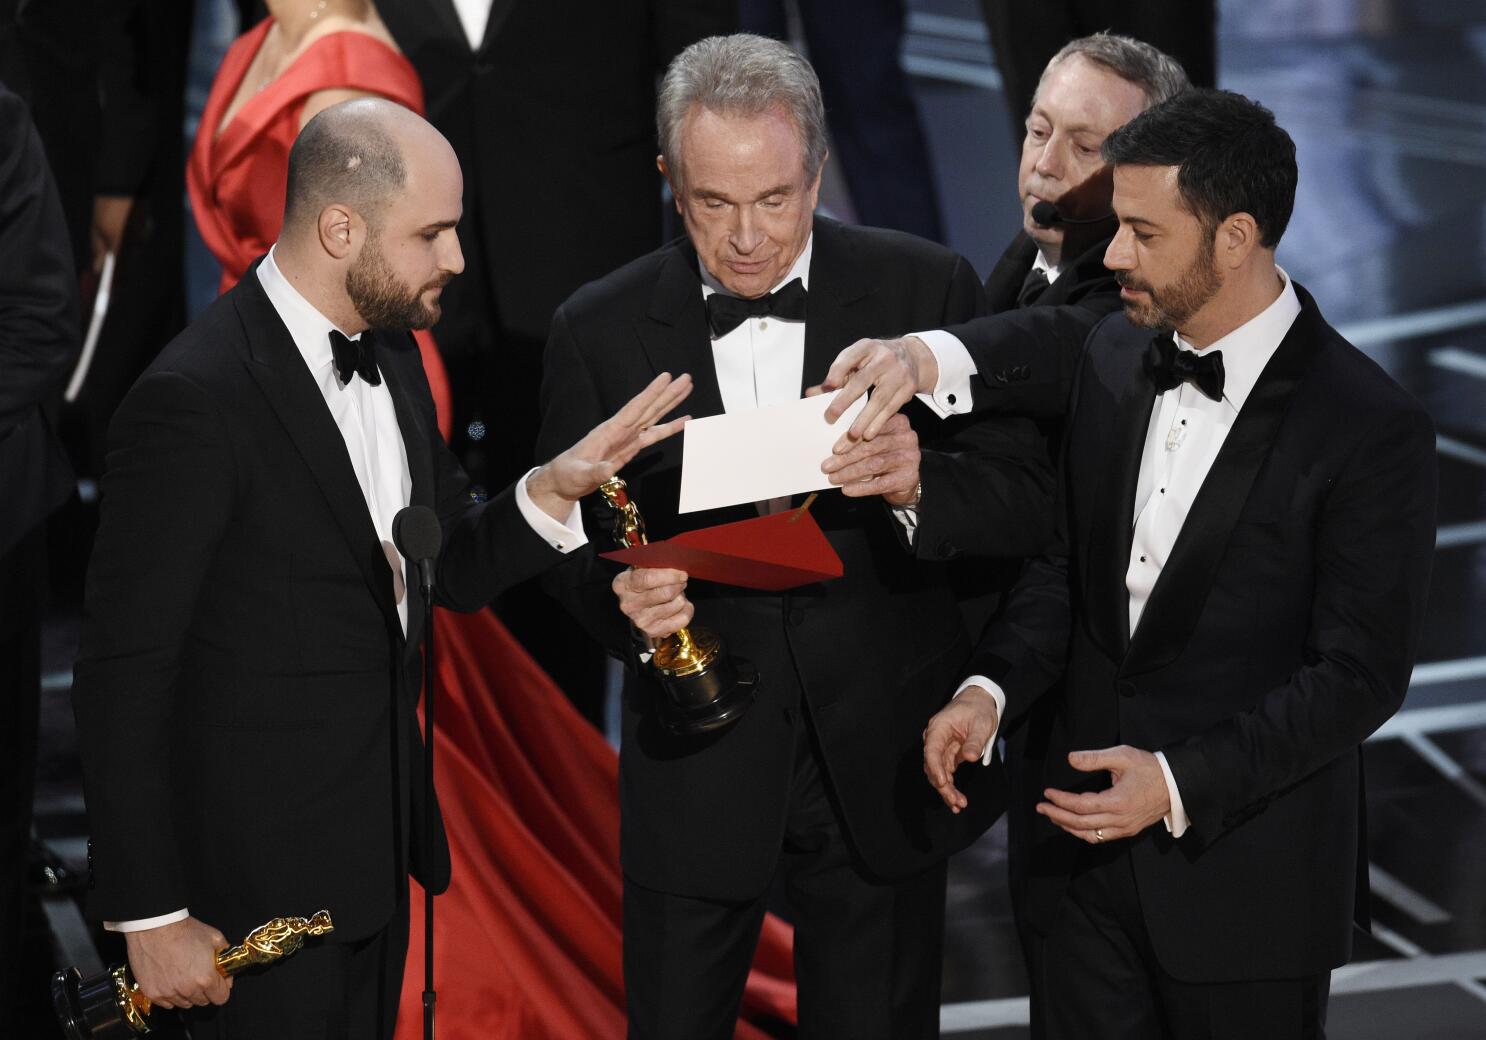 Después de la reacción violenta, los Oscar presentarán los 23 premios en  vivo al aire - Los Angeles Times